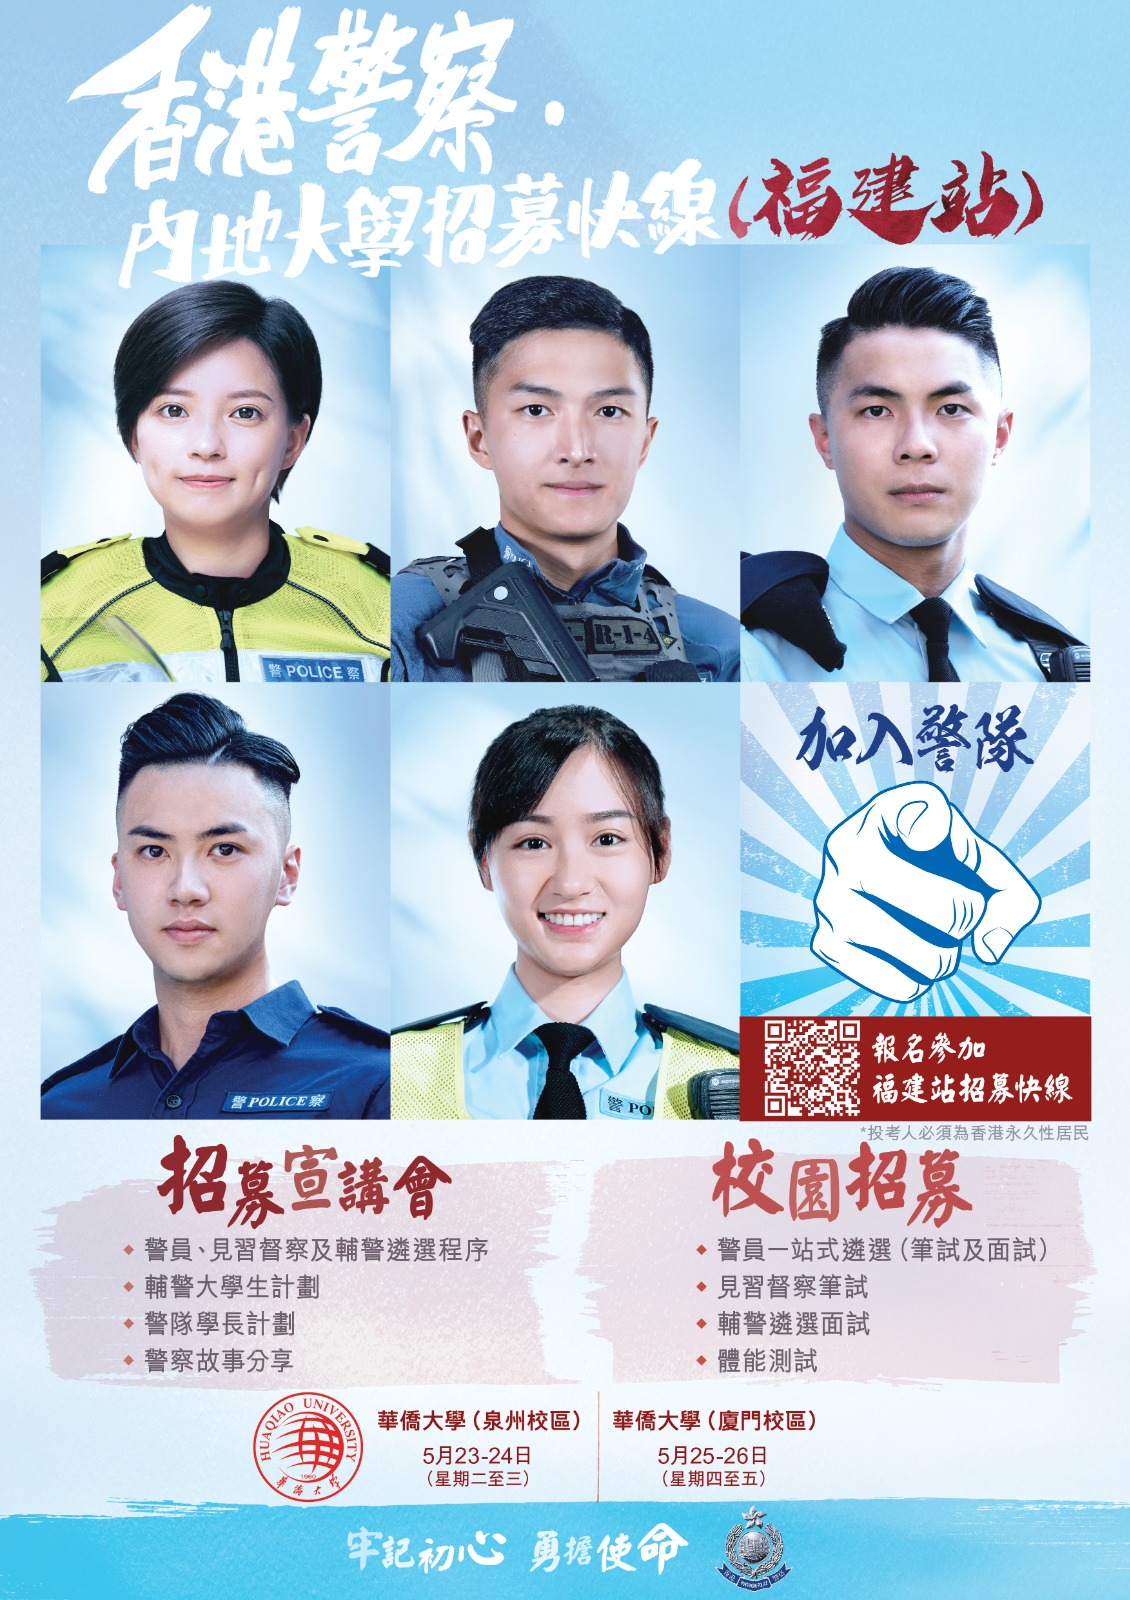 香港警察 ‧ 内地大学招募快线 (褔建站)